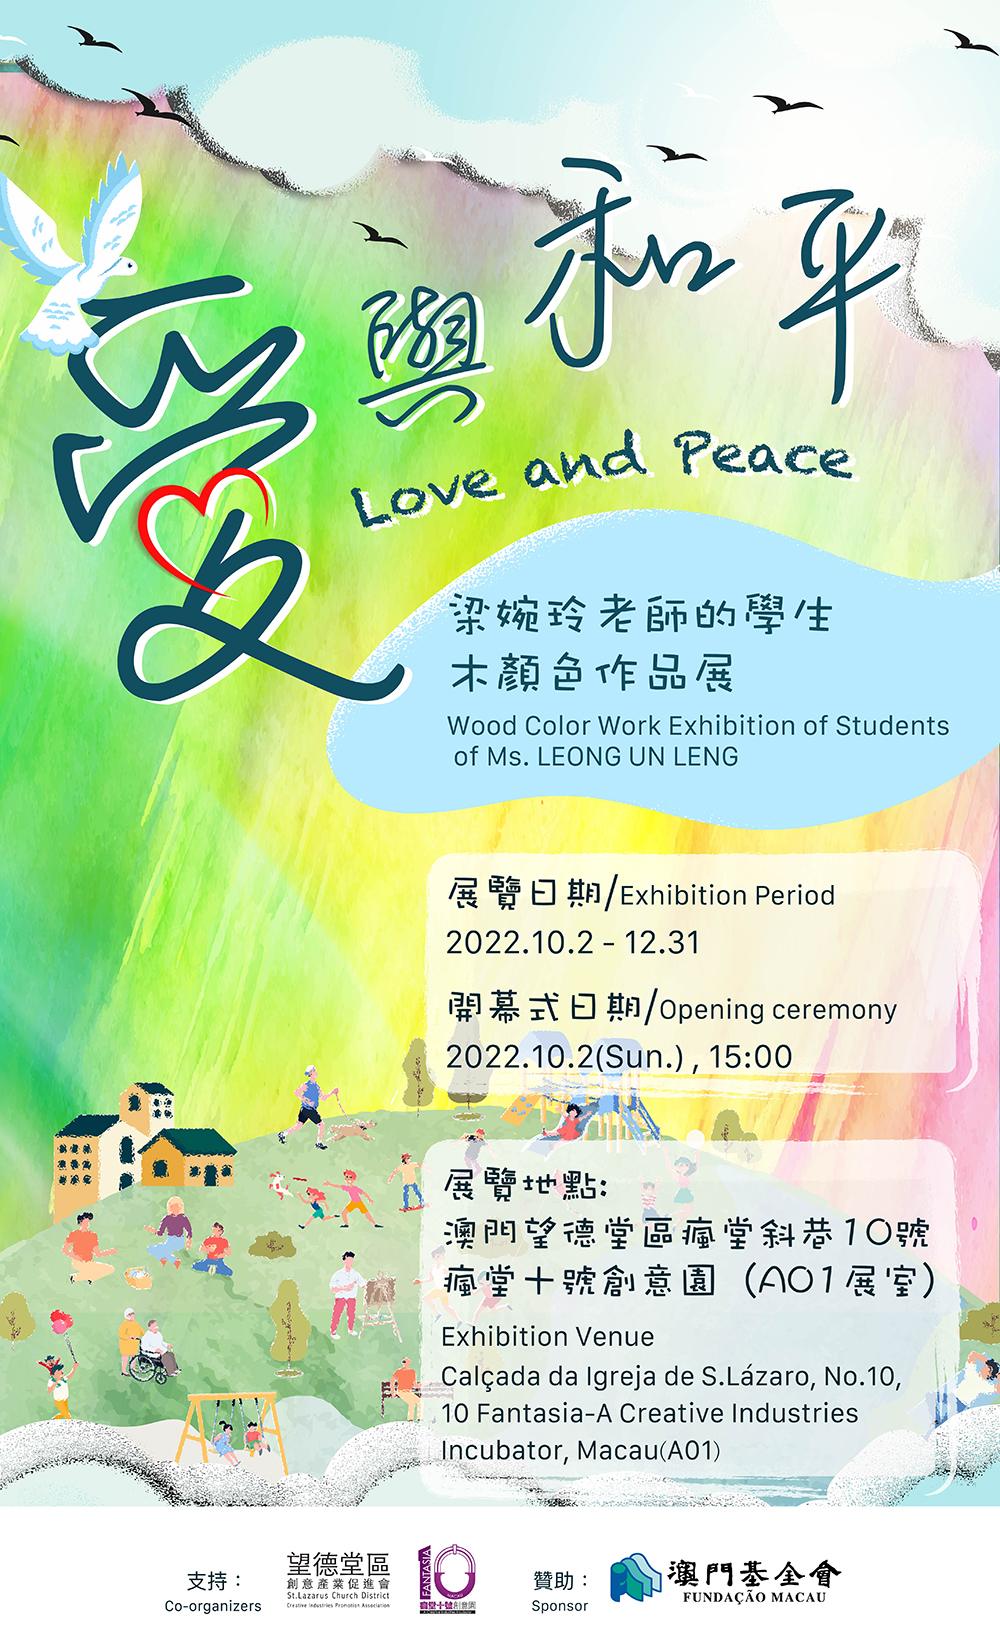 《愛與和平》梁婉玲老師的學生木顏色作品展